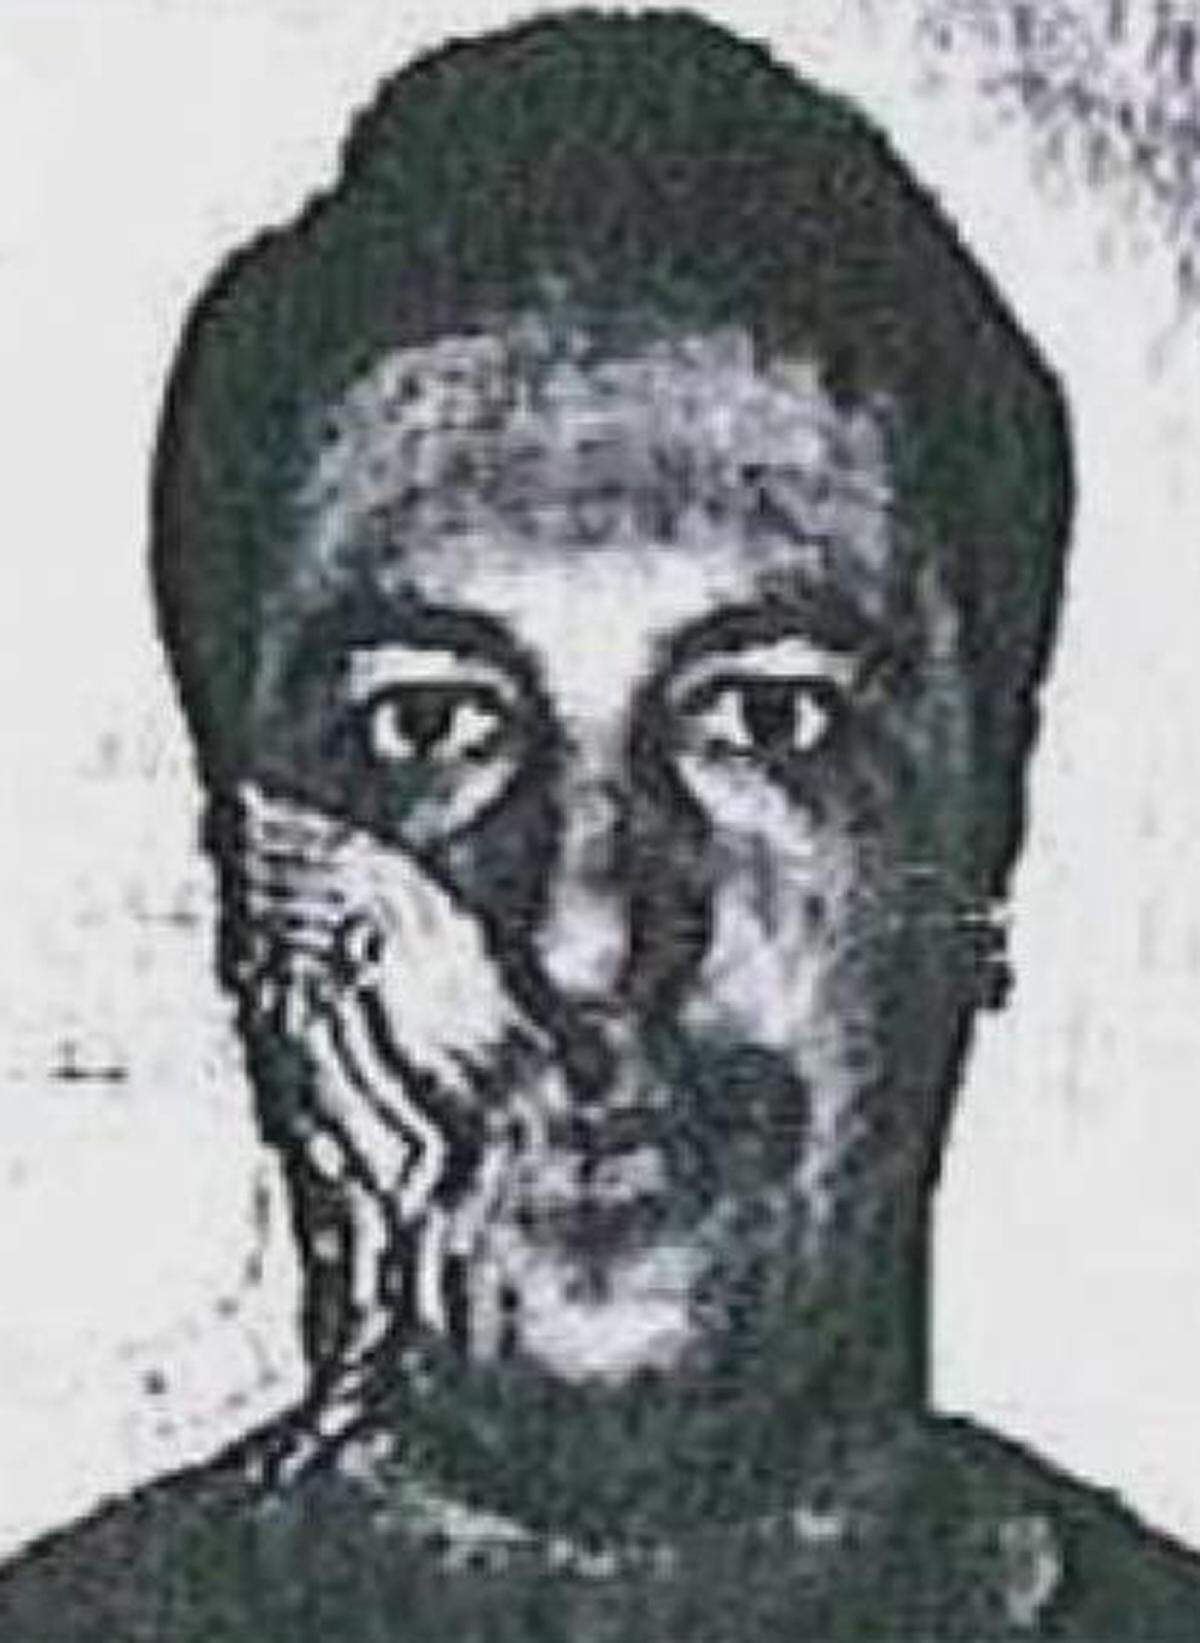 In der Wohnung im Brüsseler Vorort Forest, wo Mohamed Belkaid am 15. März nach einem Schusswechsel mit der Polizei starb, sollten die Ermittler auf ein Waffenarsenal stoßen: Kalaschnikow-Sturmgewehre, jede Menge Patronen – aber auch eine IS-Fahne und ein Salafistenbuch. Belkaid alias Samir Bouzid taucht in der IS-Liste auf, die Sky News zugespielt wurde. Gerüchteweise war er im „ersten Leben“ Konditor in Algerien. In Belgien, wo er sich illegal aufhielt, wurde er wegen Taschendiebstahls aktenkundig. Sein „drittes“ Leben fing im April 2014 an, als er in Syrien kämpfte. Getarnt als Flüchtling kam er nach Europa, wo ihn Salah Abdeslam abholte. Am Tag des Paris-Terrors schrieb ein Attentäter: „Wir beginnen jetzt.“ Mutmaßlicher SMS-Empfänger: Belkaid.